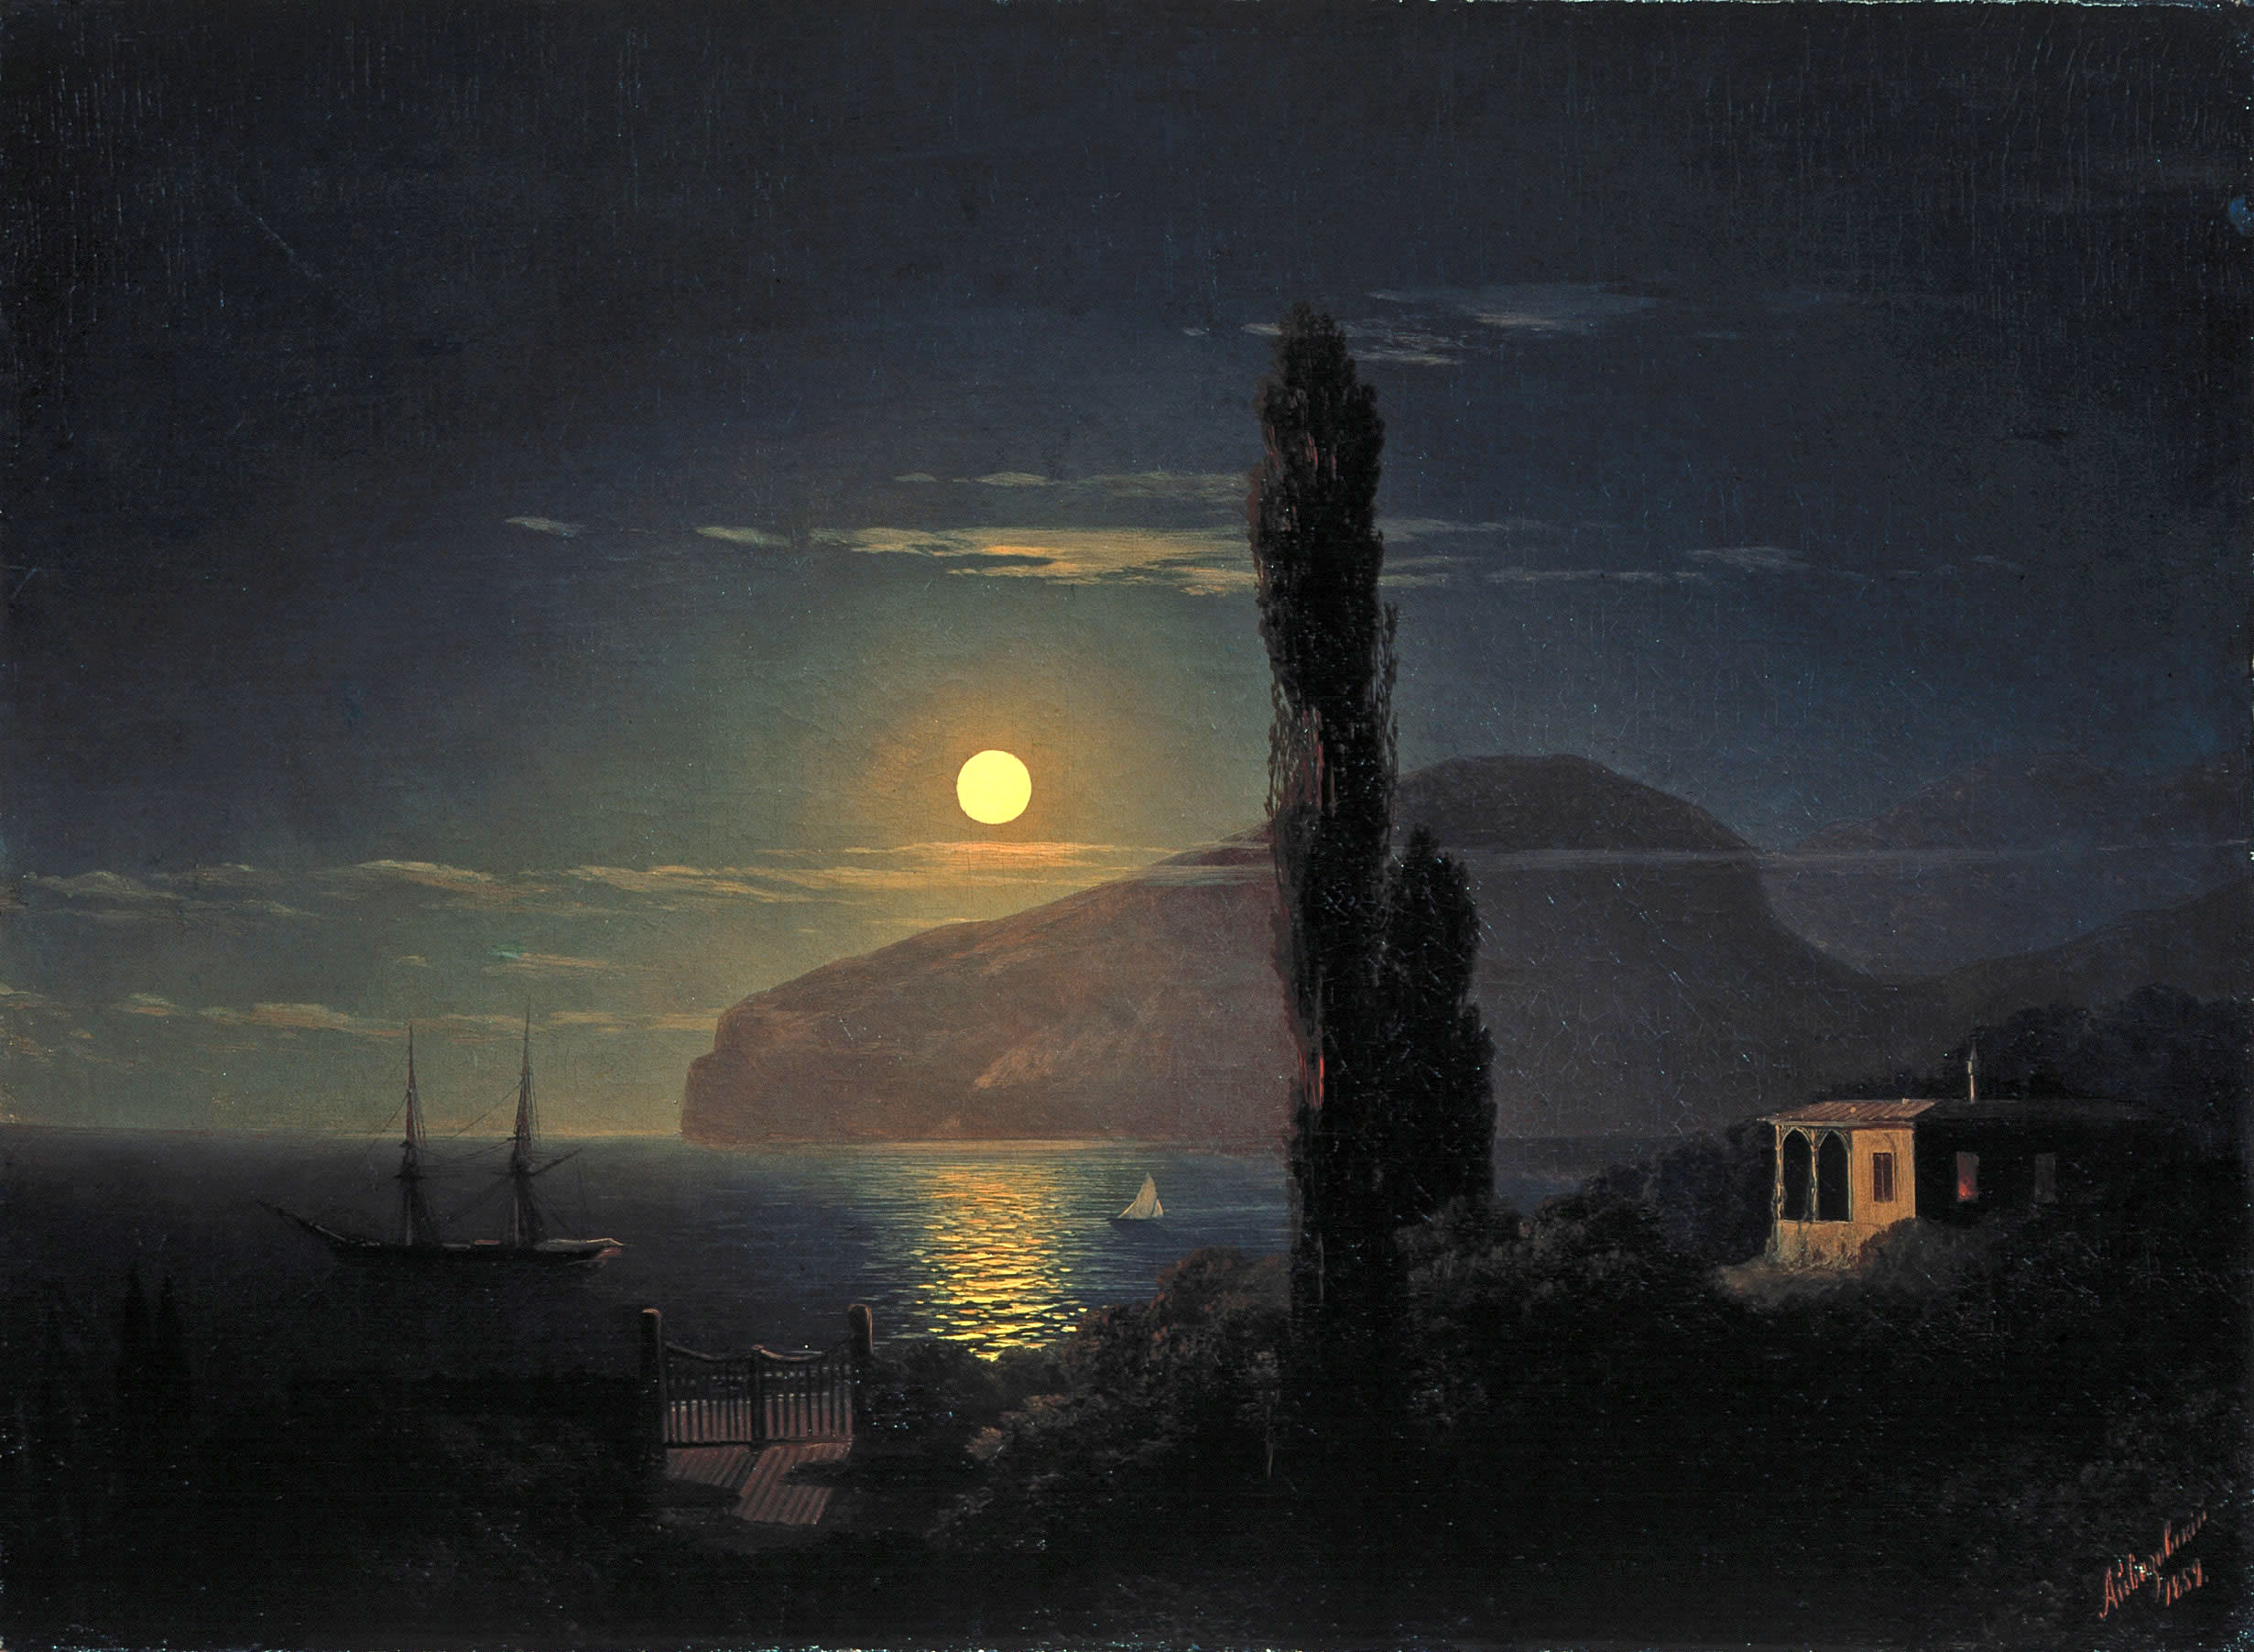 Айвазовский. Лунная ночь в Крыму. 1859